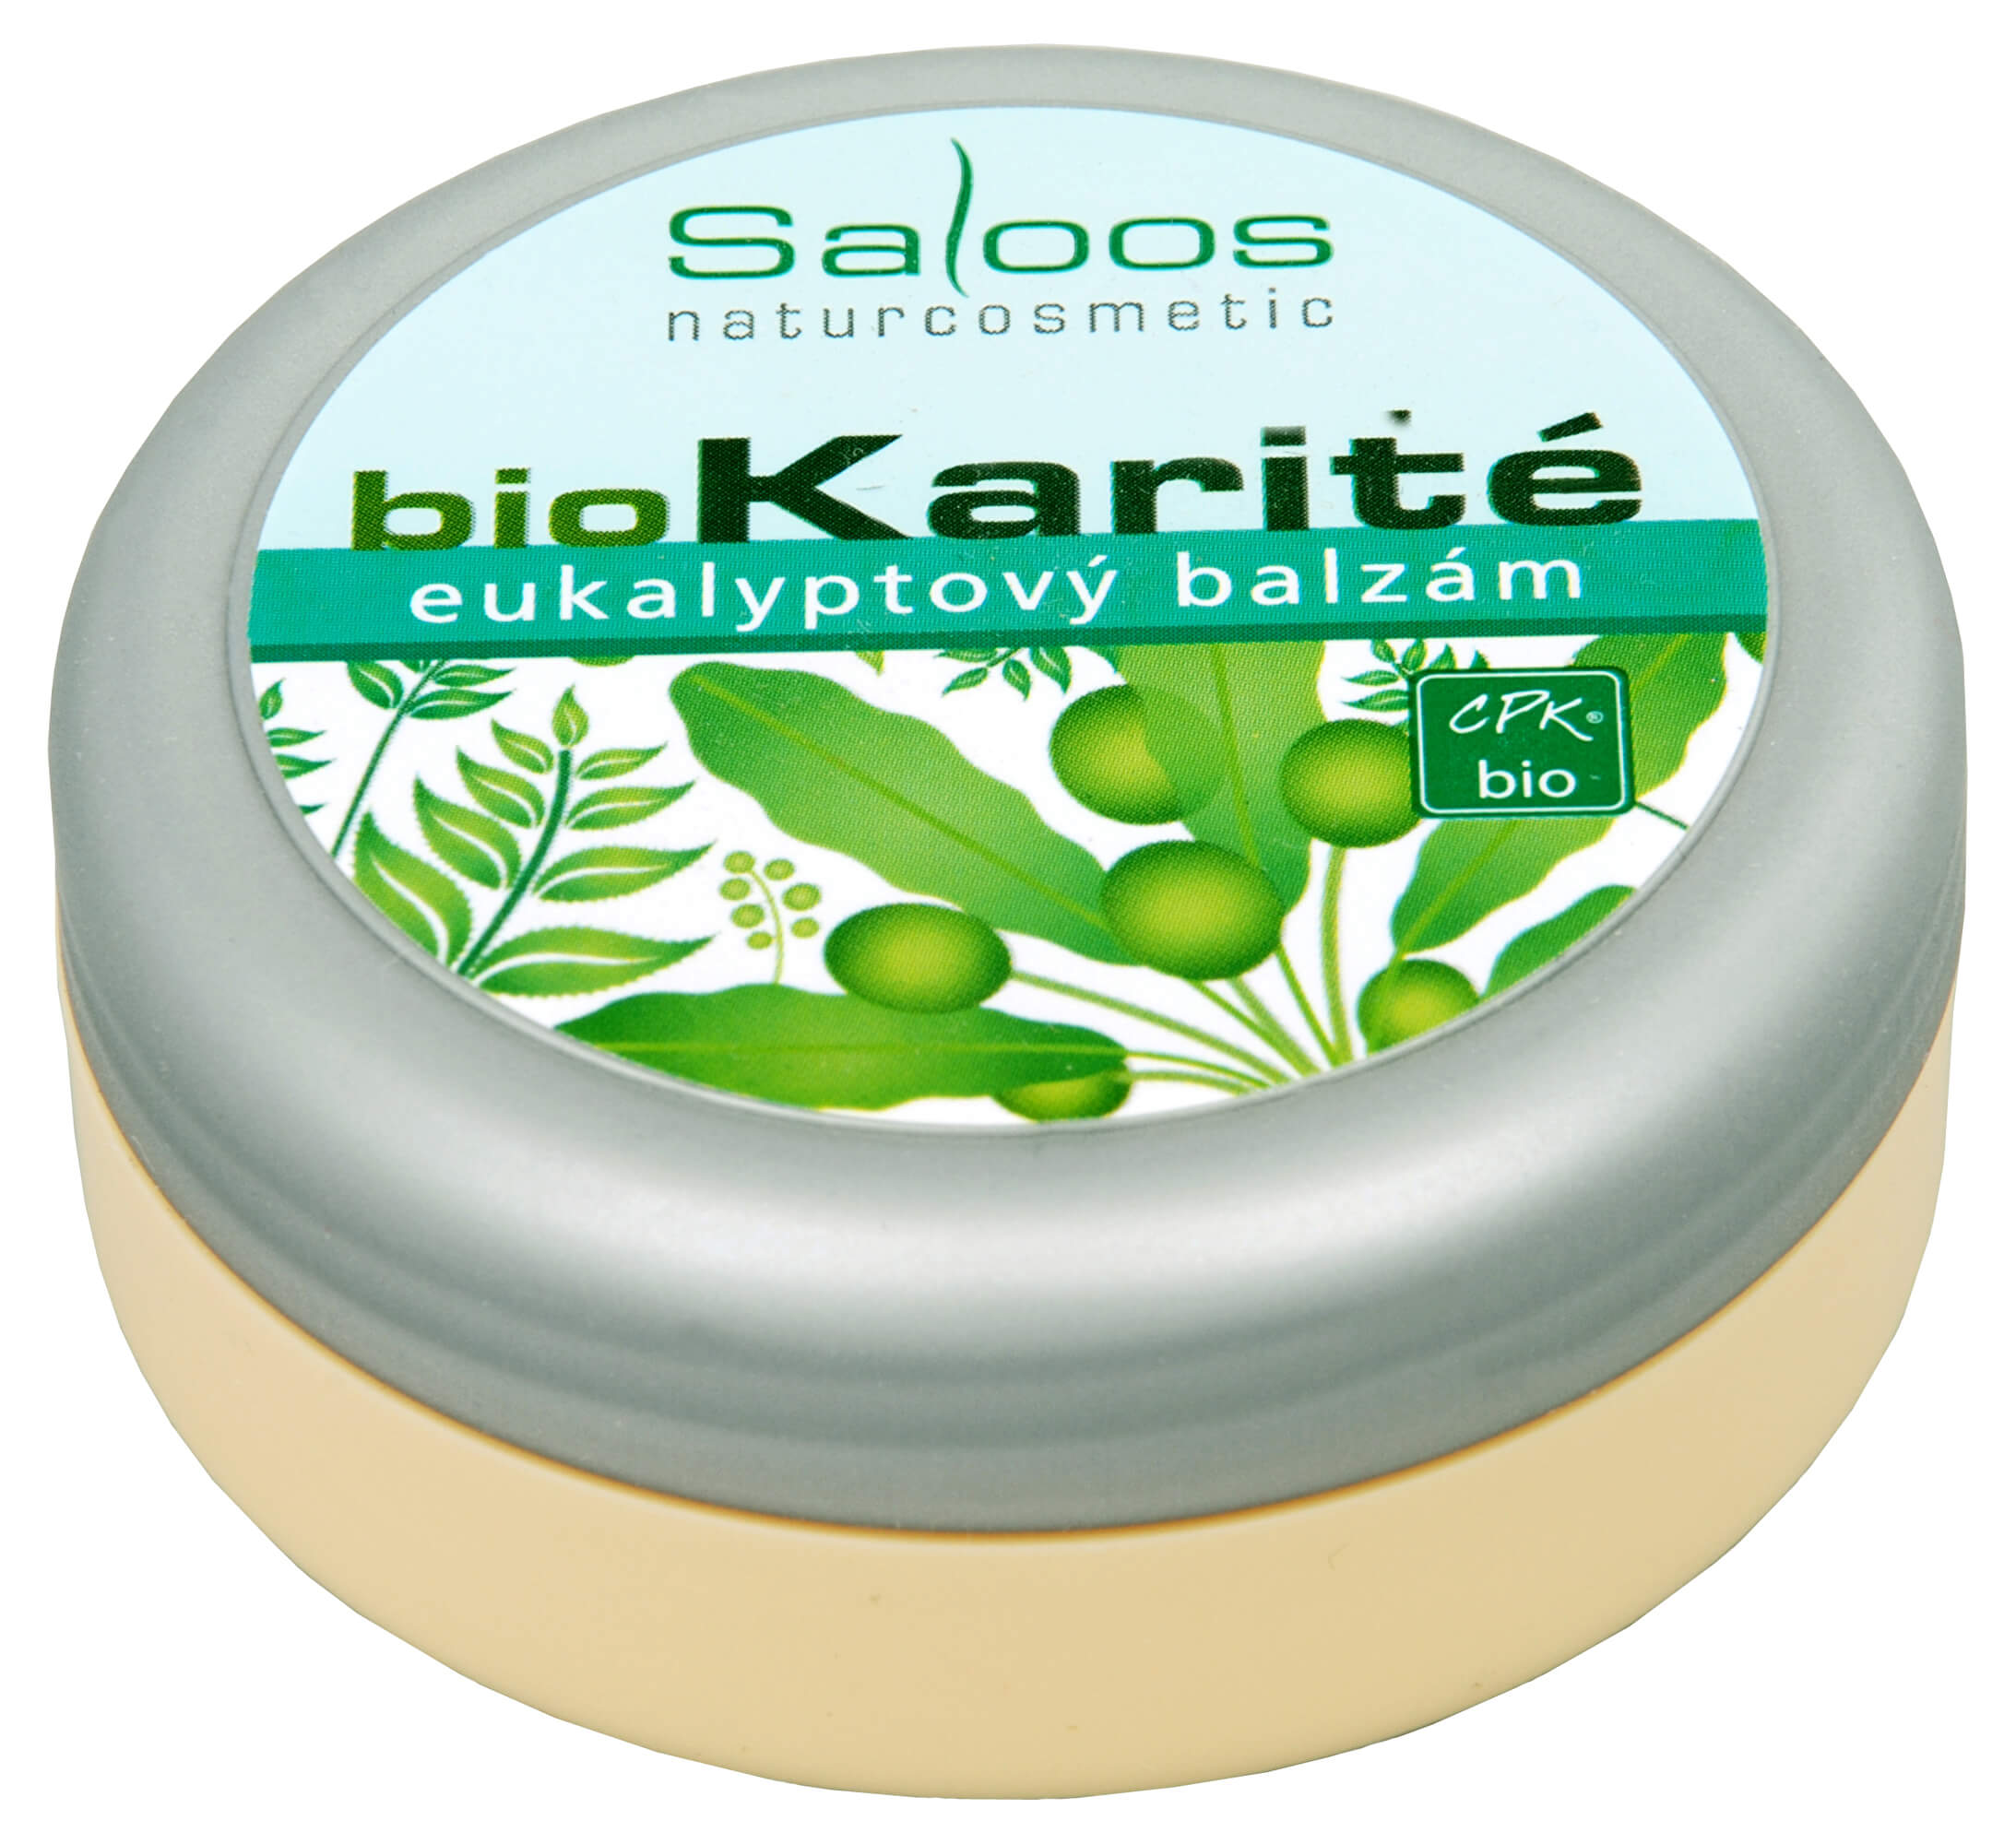 Zobrazit detail výrobku Saloos Bio Karité balzám - Eukalyptový 50 ml + 2 měsíce na vrácení zboží